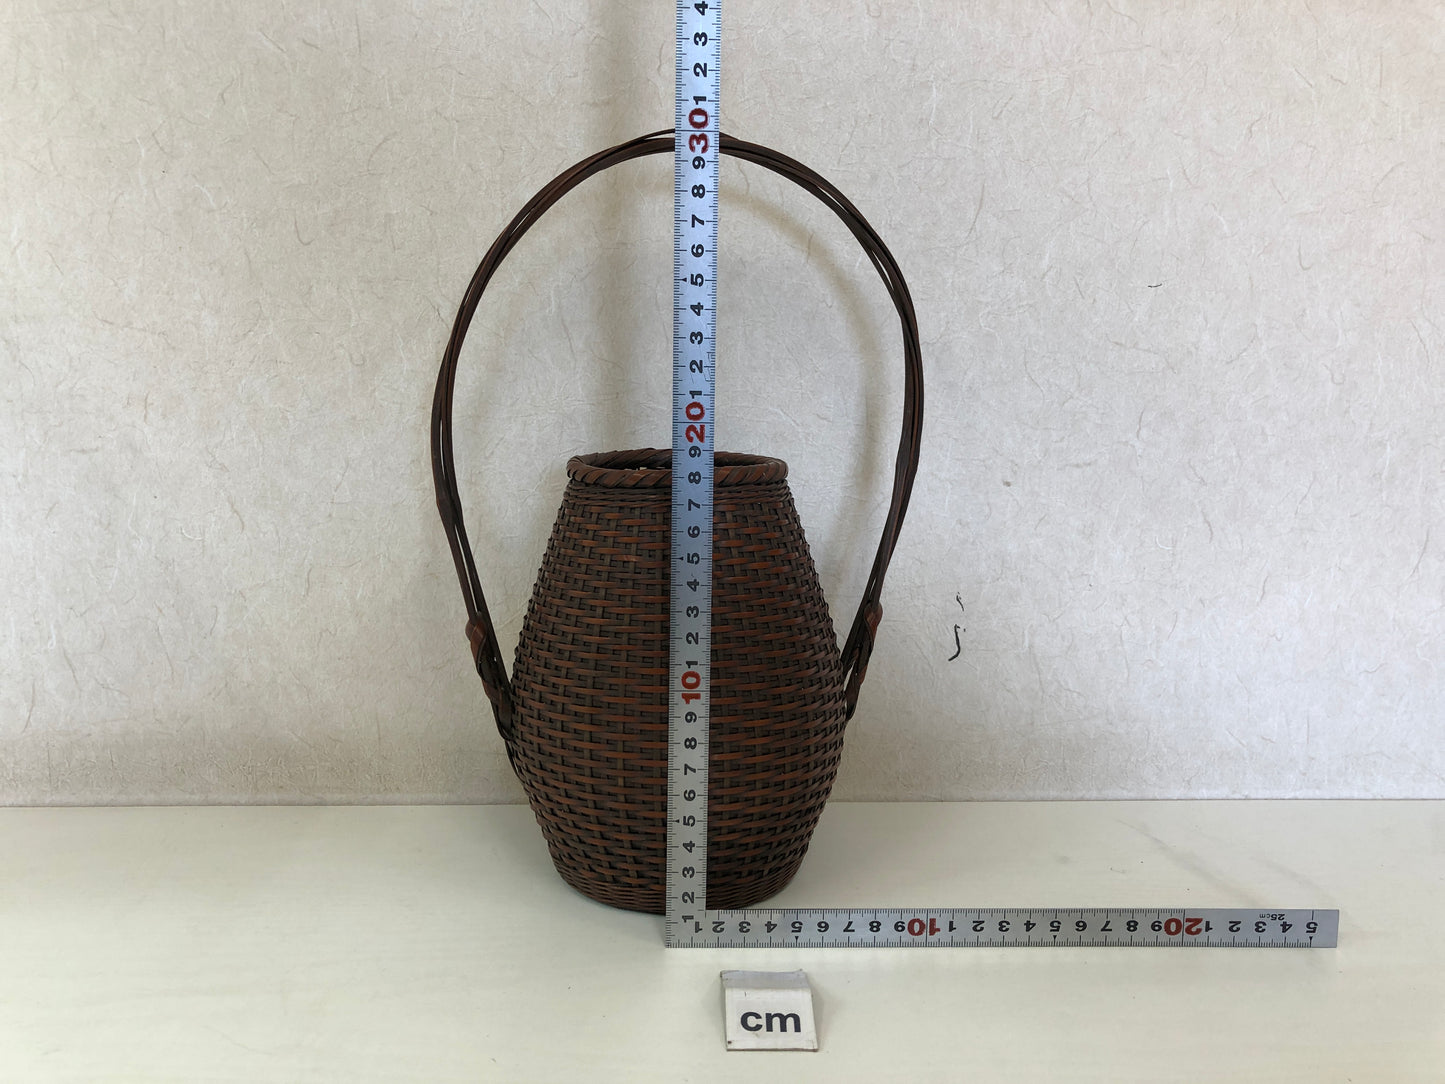 Y4539 Bamboo Woven Basket flower vase handle signed Japan antique ikebana kabin